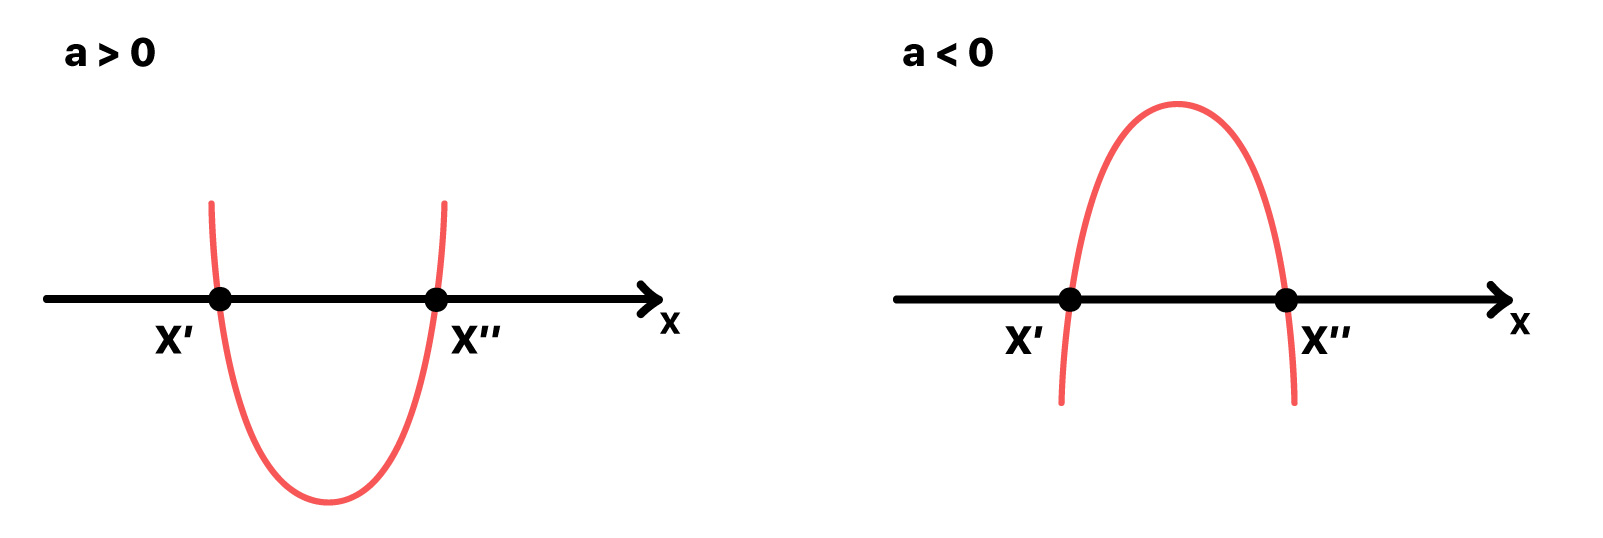 parábola que corta o eixo x em dois pontos distintos x' e x" quando a concavidade é voltada para cima e para baixo